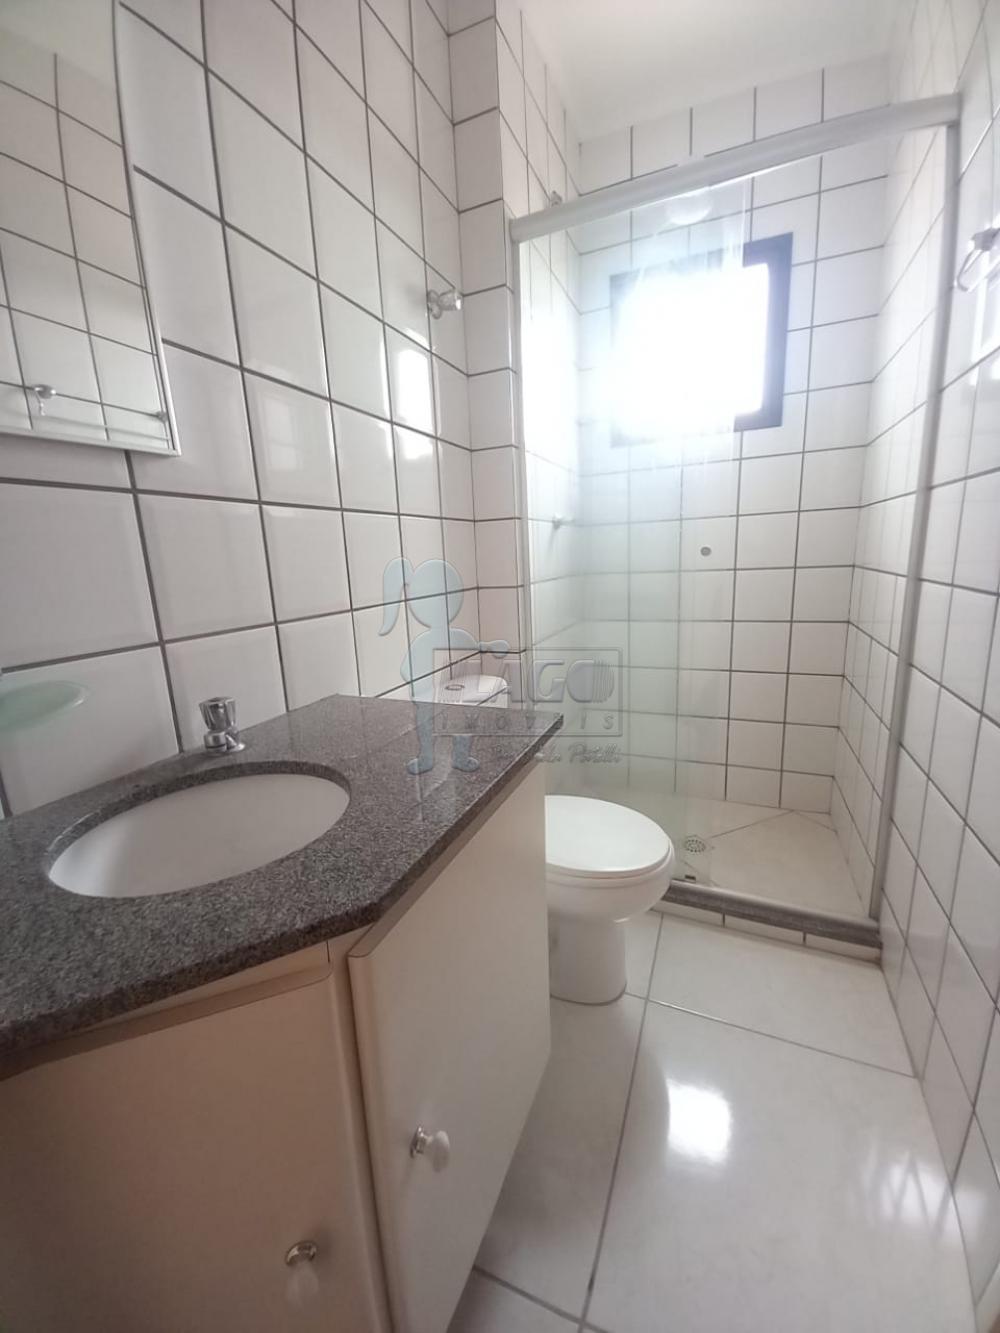 Alugar Apartamentos / Padrão em Ribeirão Preto R$ 1.250,00 - Foto 5